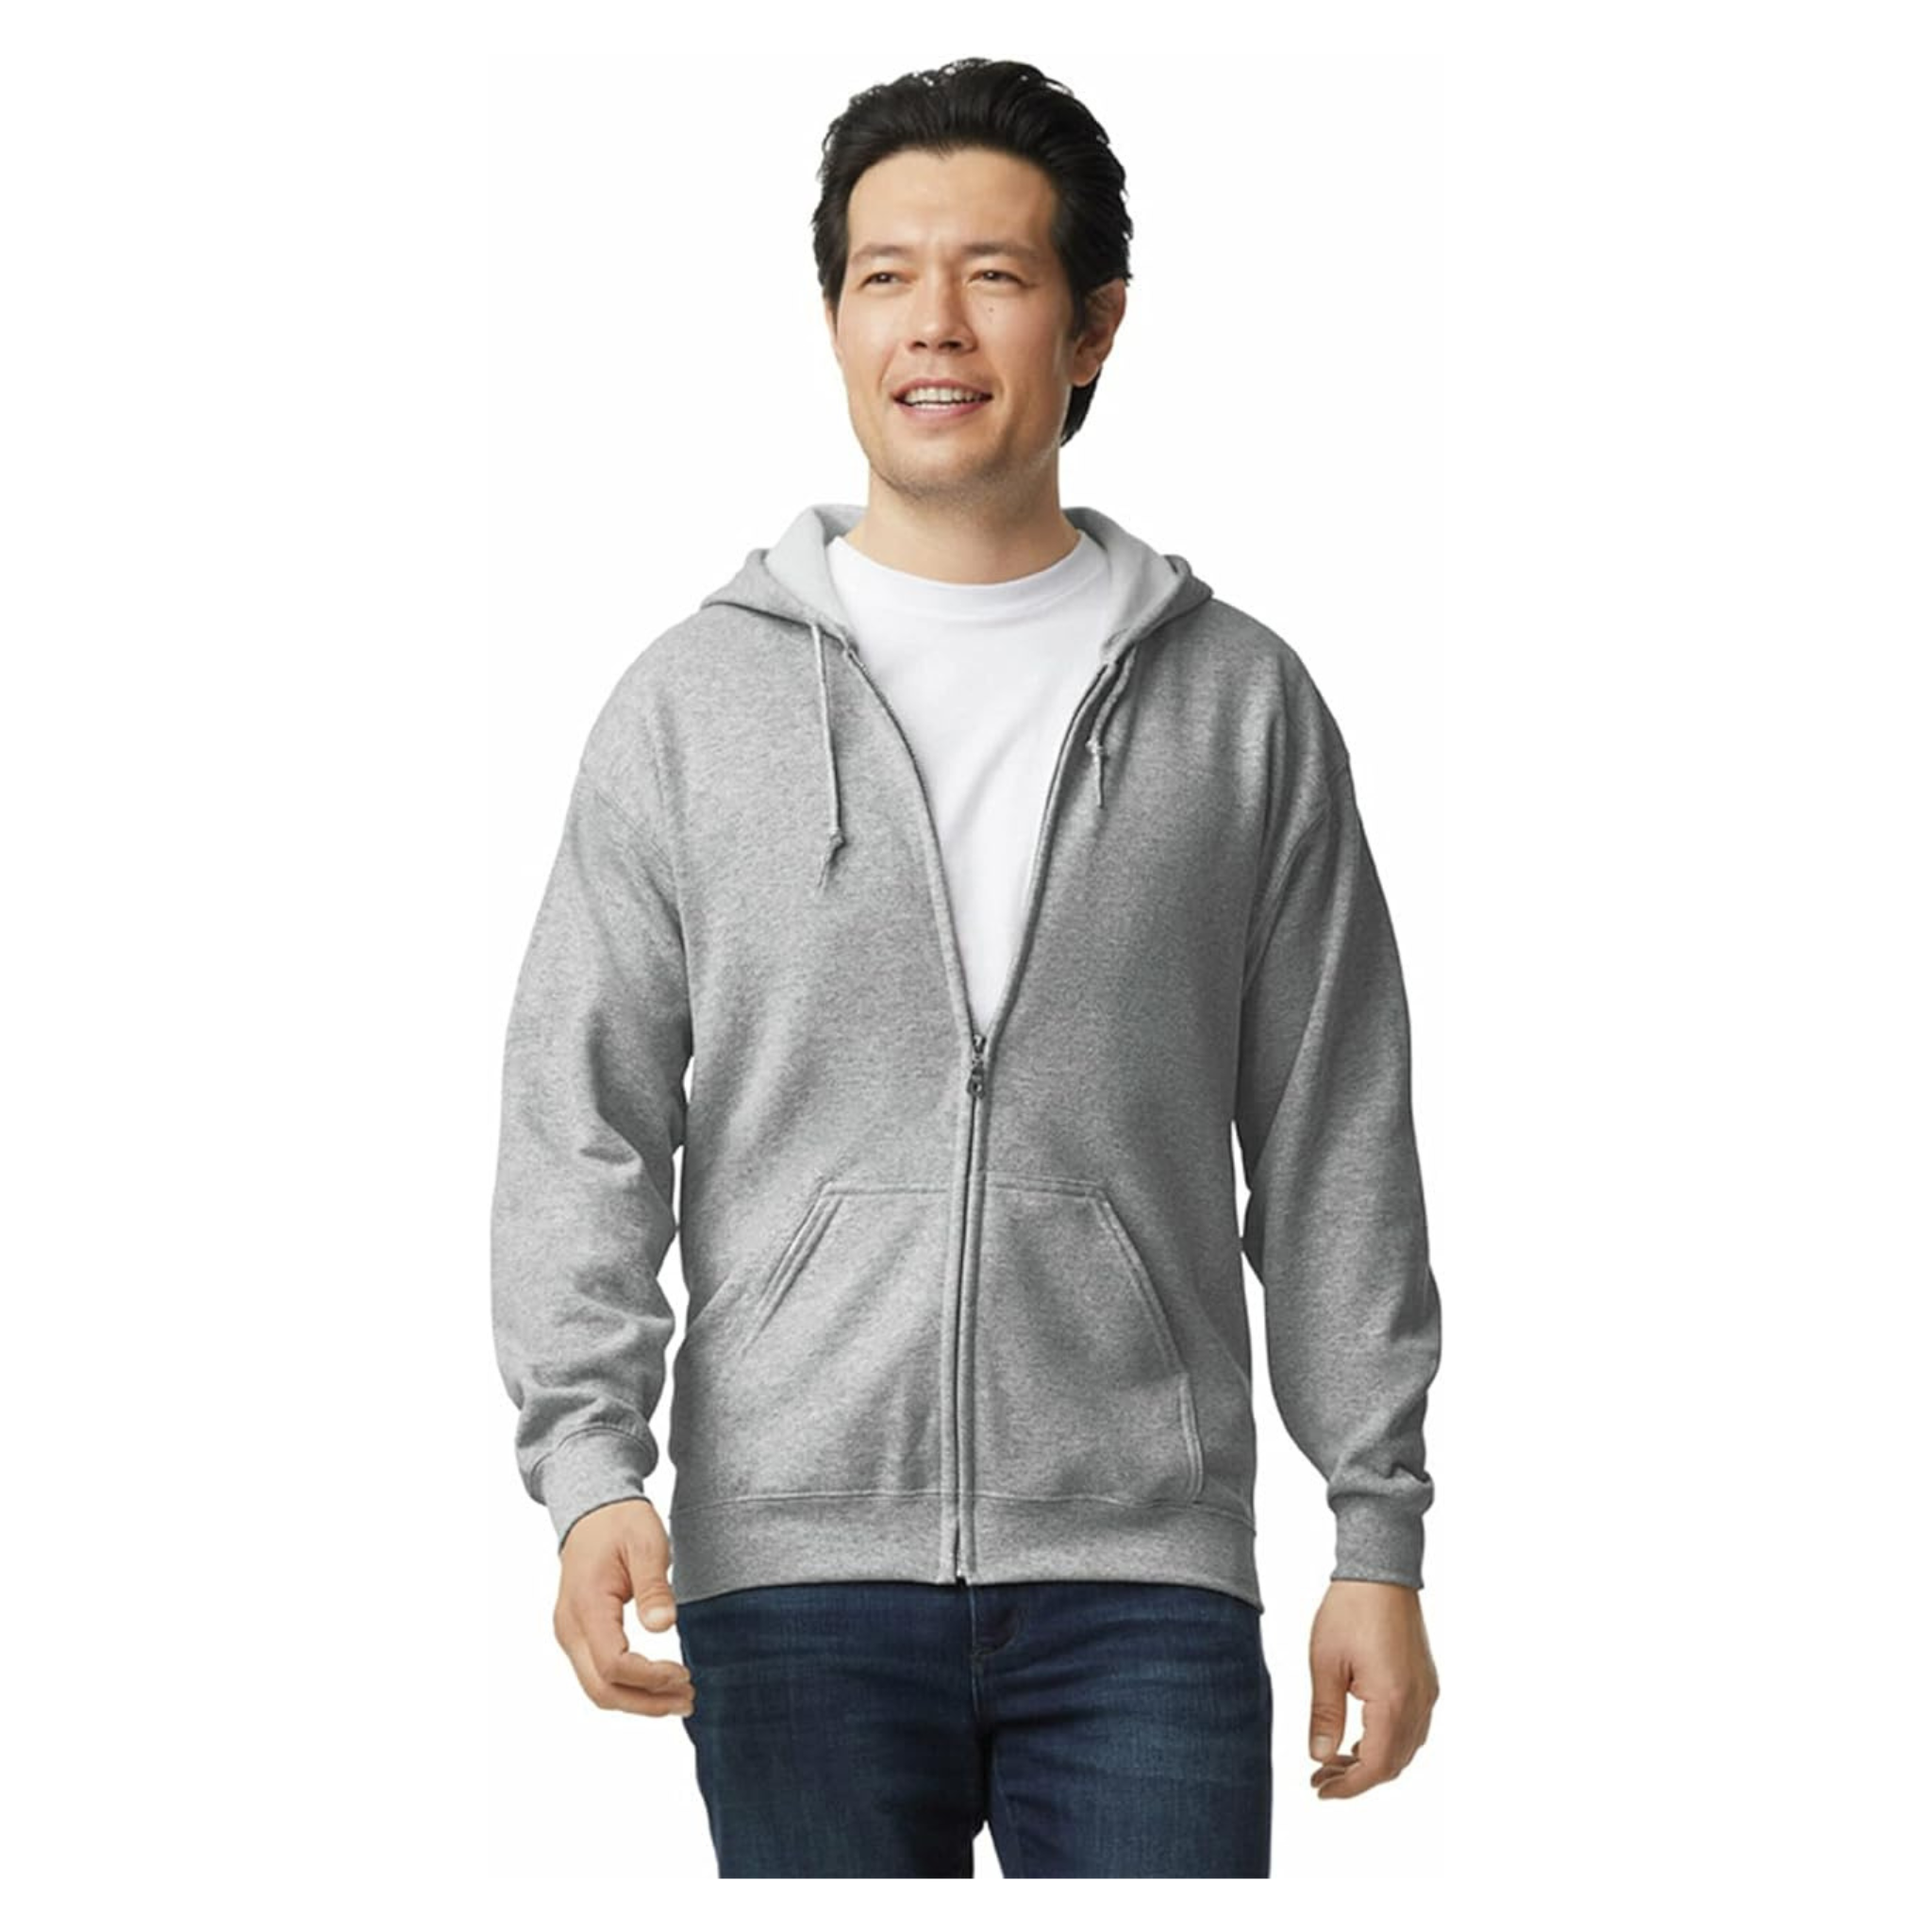 Gildan Unisex Adult Fleece Zip Hoodie Sweatshirt